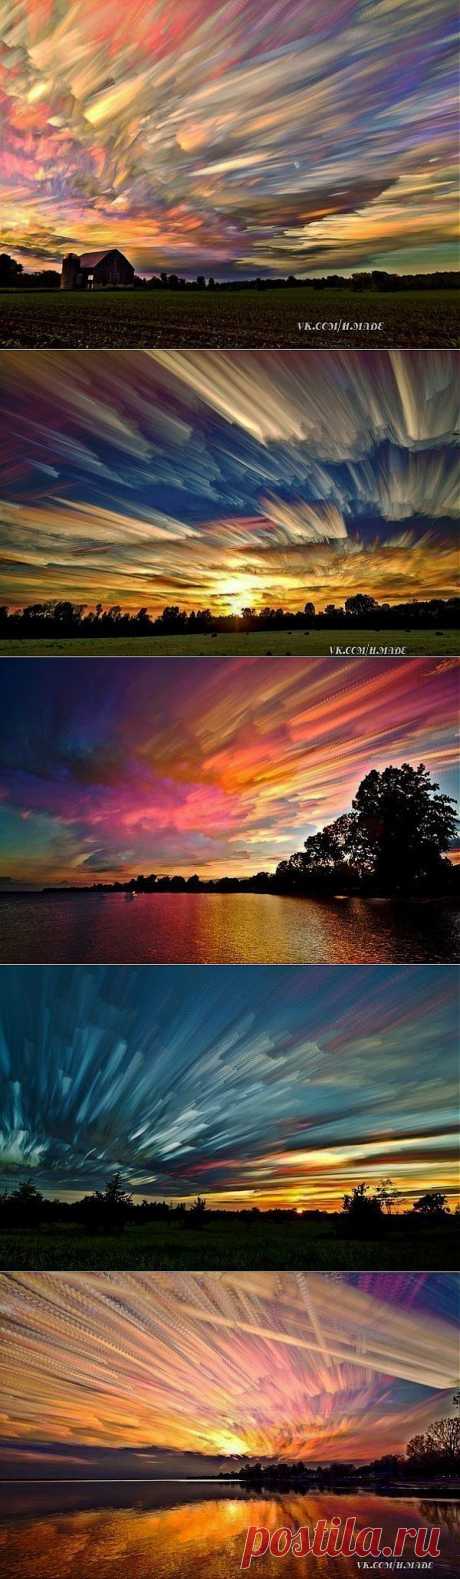 “Размытые небеса“ фотограф Мэтта Моллоя.
Канадский фотограф сделал великолепную серию фотографий с небом в центре композиции.